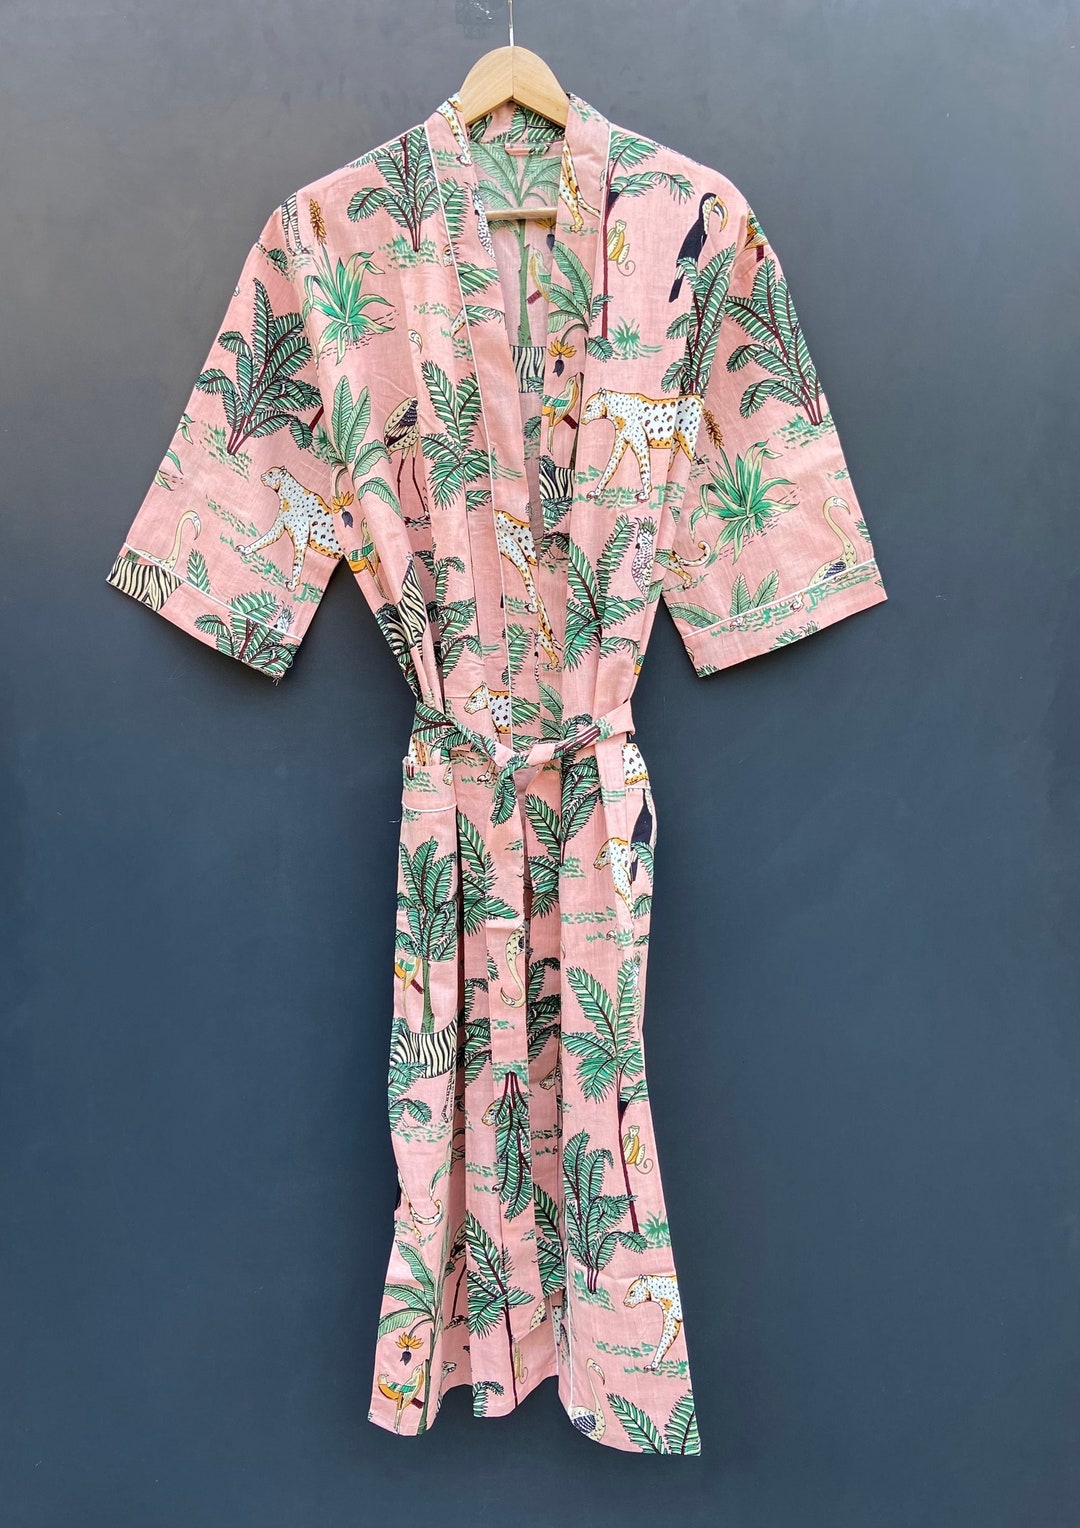 EXPRESS DELIVERY Safari Print Cotton Kimono Robes Wild Life - Etsy